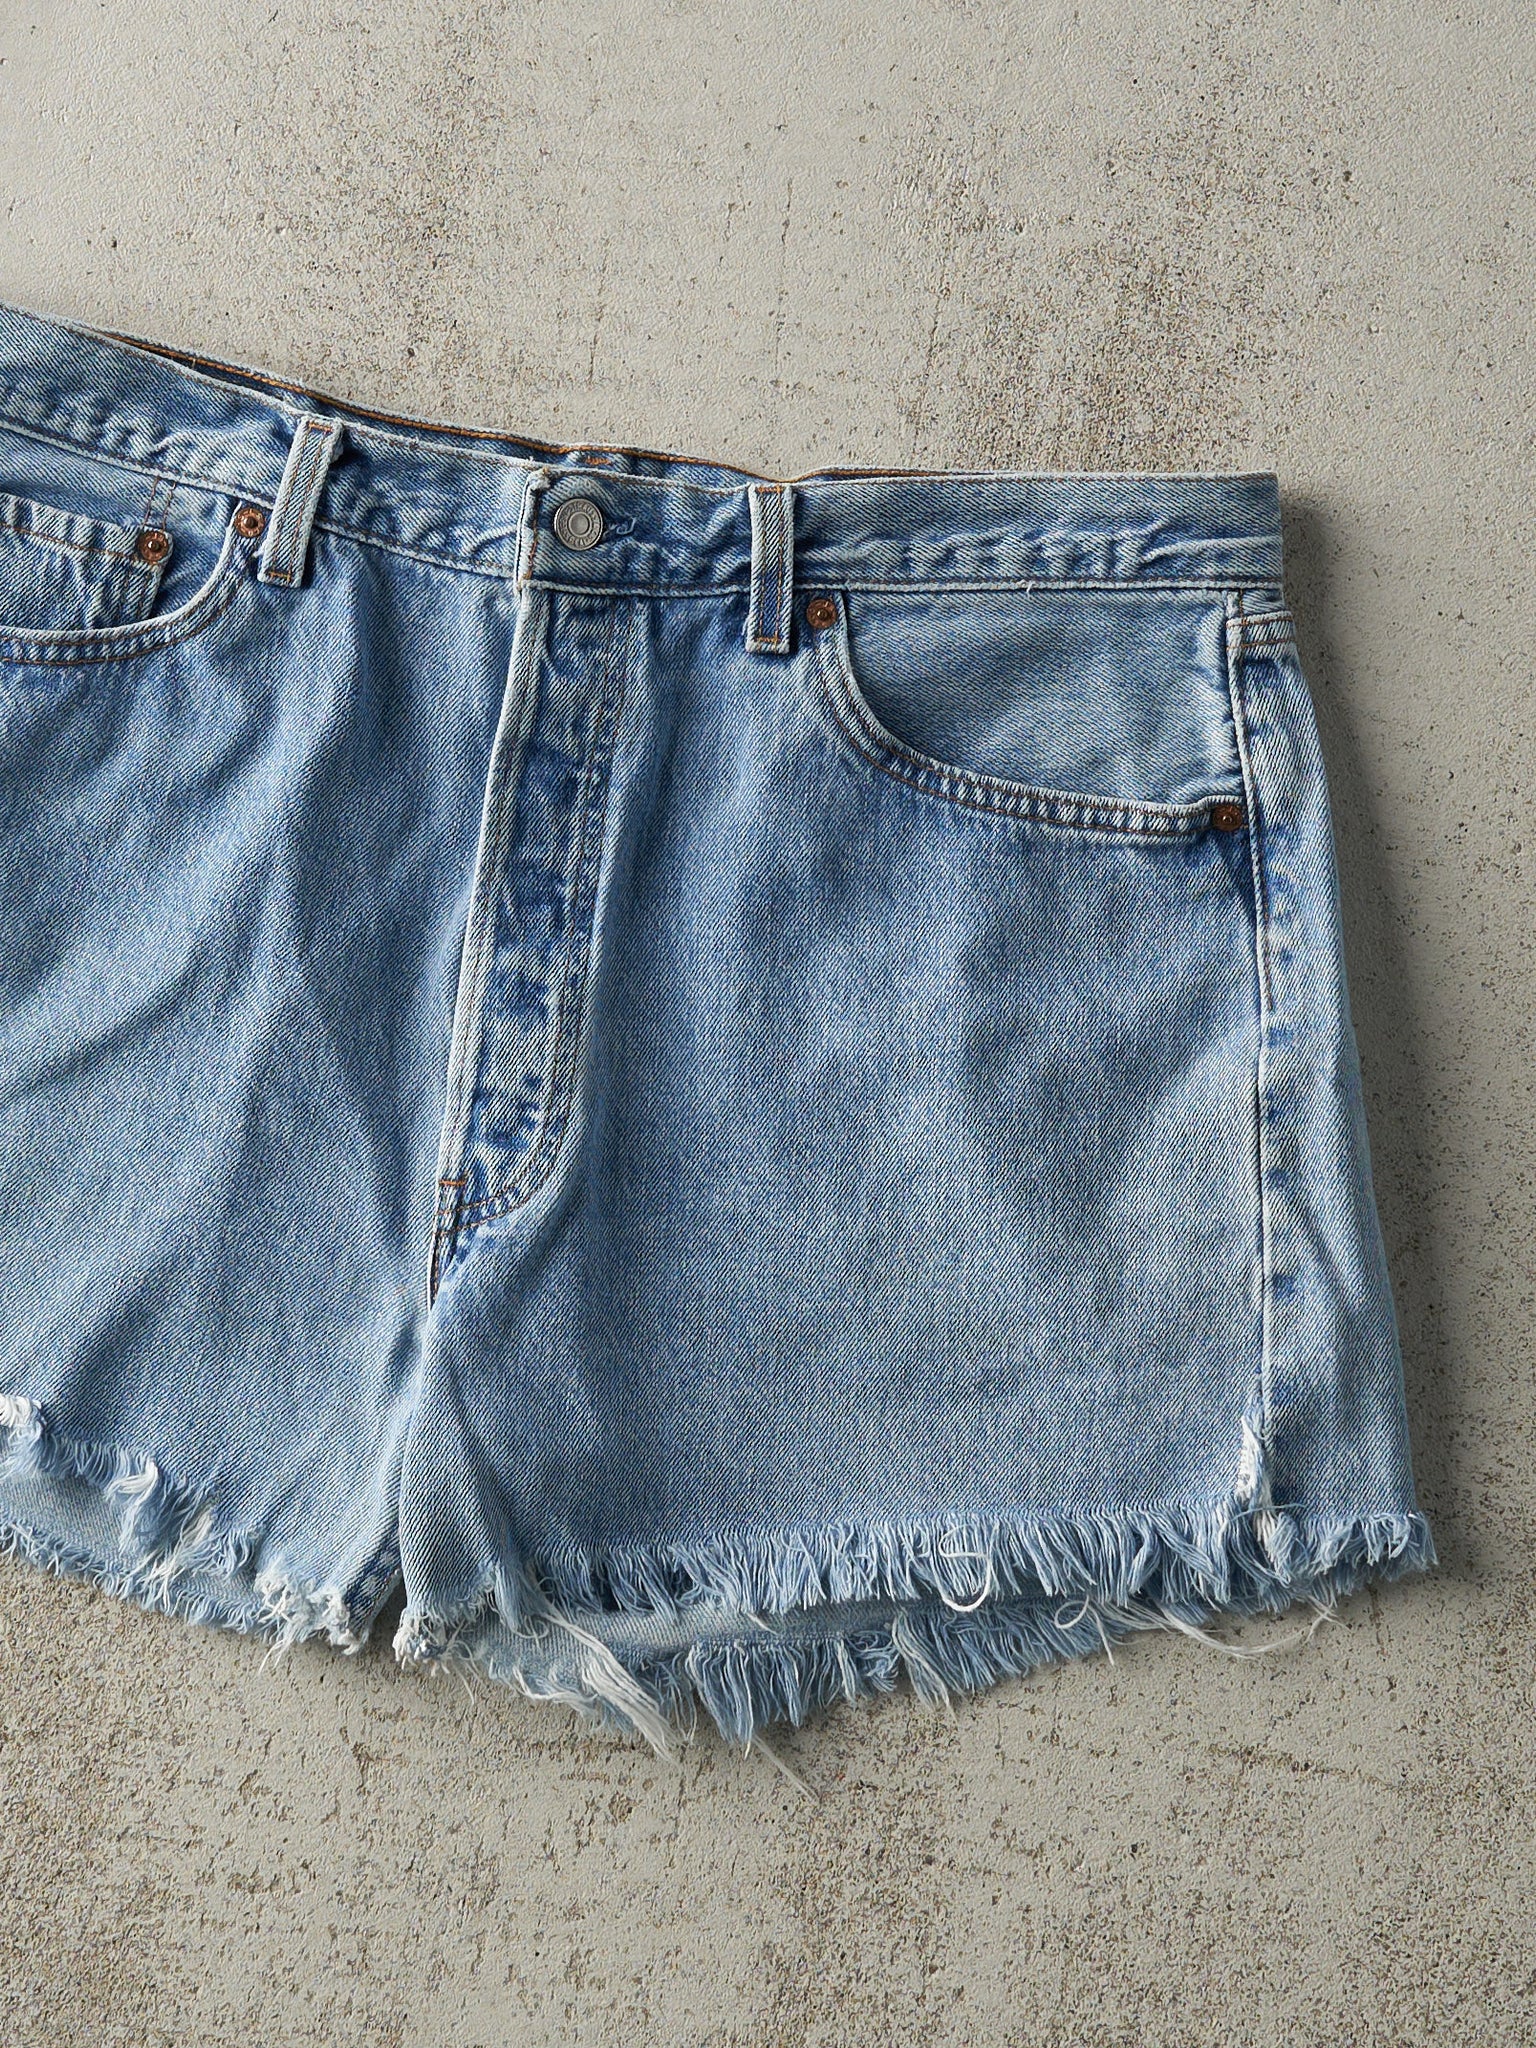 Vintage 90s Light Wash Levi's 501 Cut Off Jean Shorts (36x4)